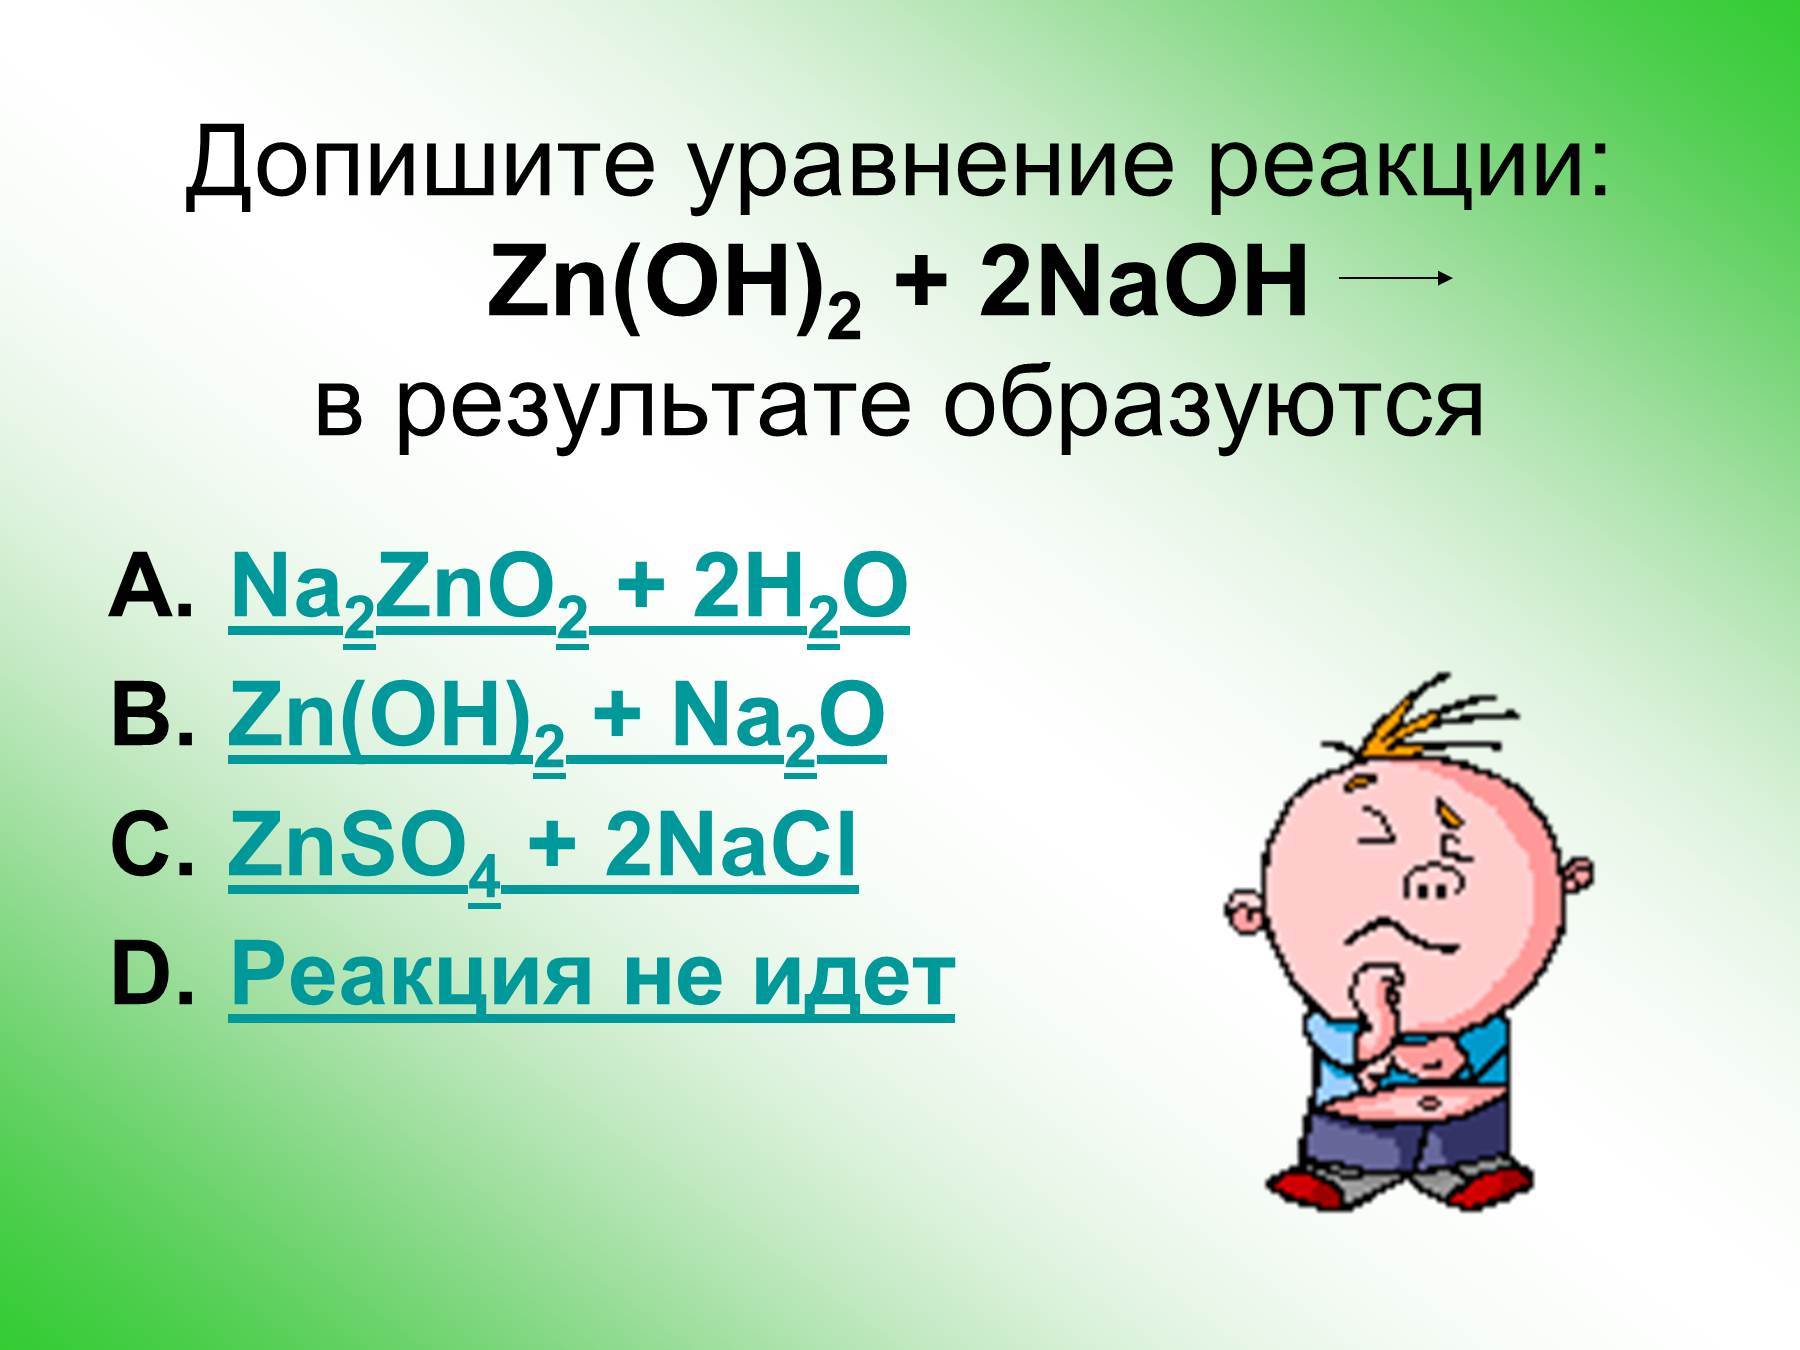 Б zn oh 2 и naoh р. ZN Oh 2 уравнение реакции. ZN Oh 2 реакции. ZN(Oh)2. ZNO уравнение реакции.